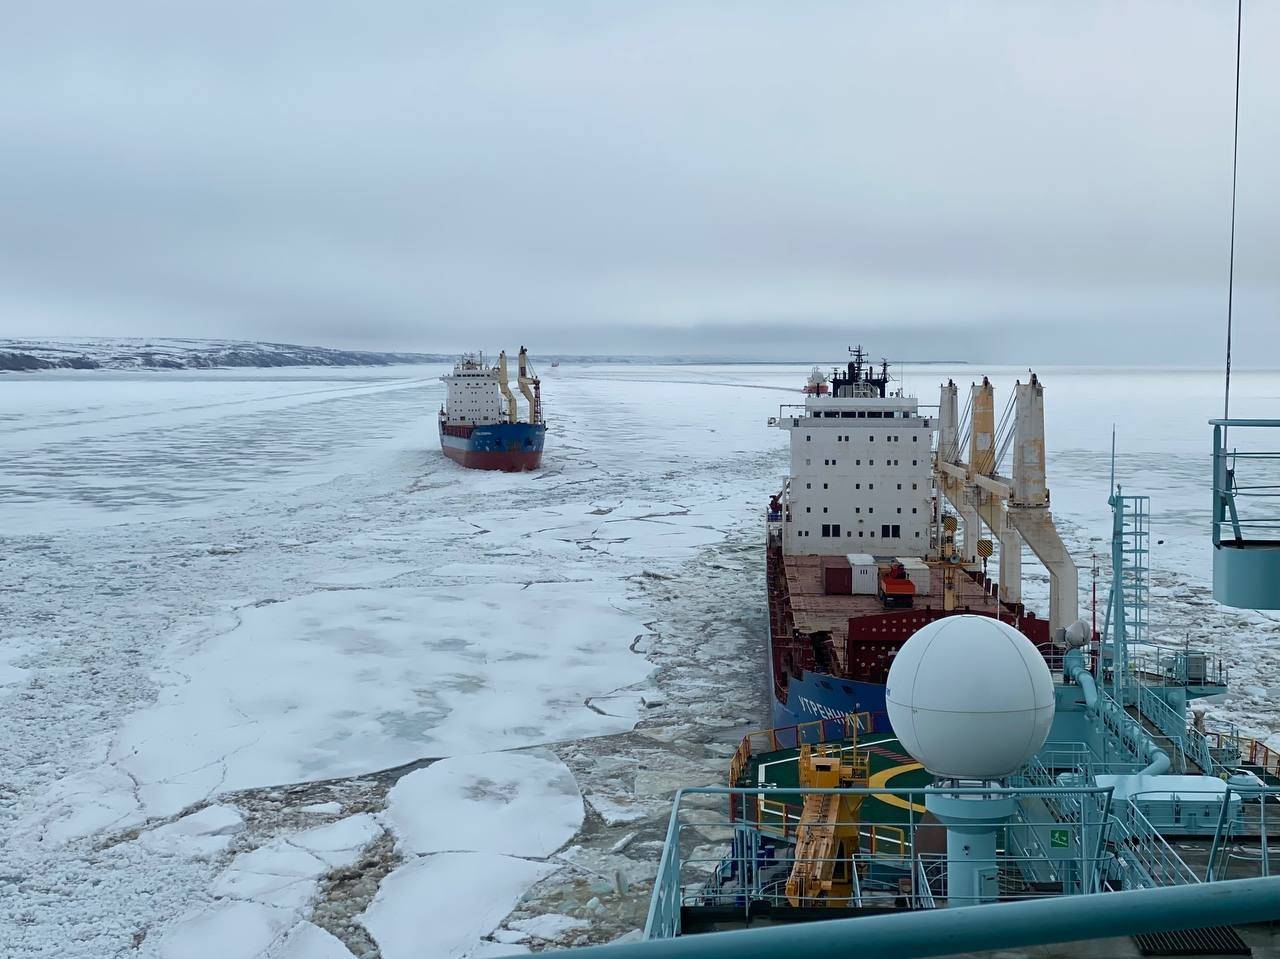 核动力破冰船“西伯利亚号”(Sibir)完成对叶尼塞河的防冰堵作业